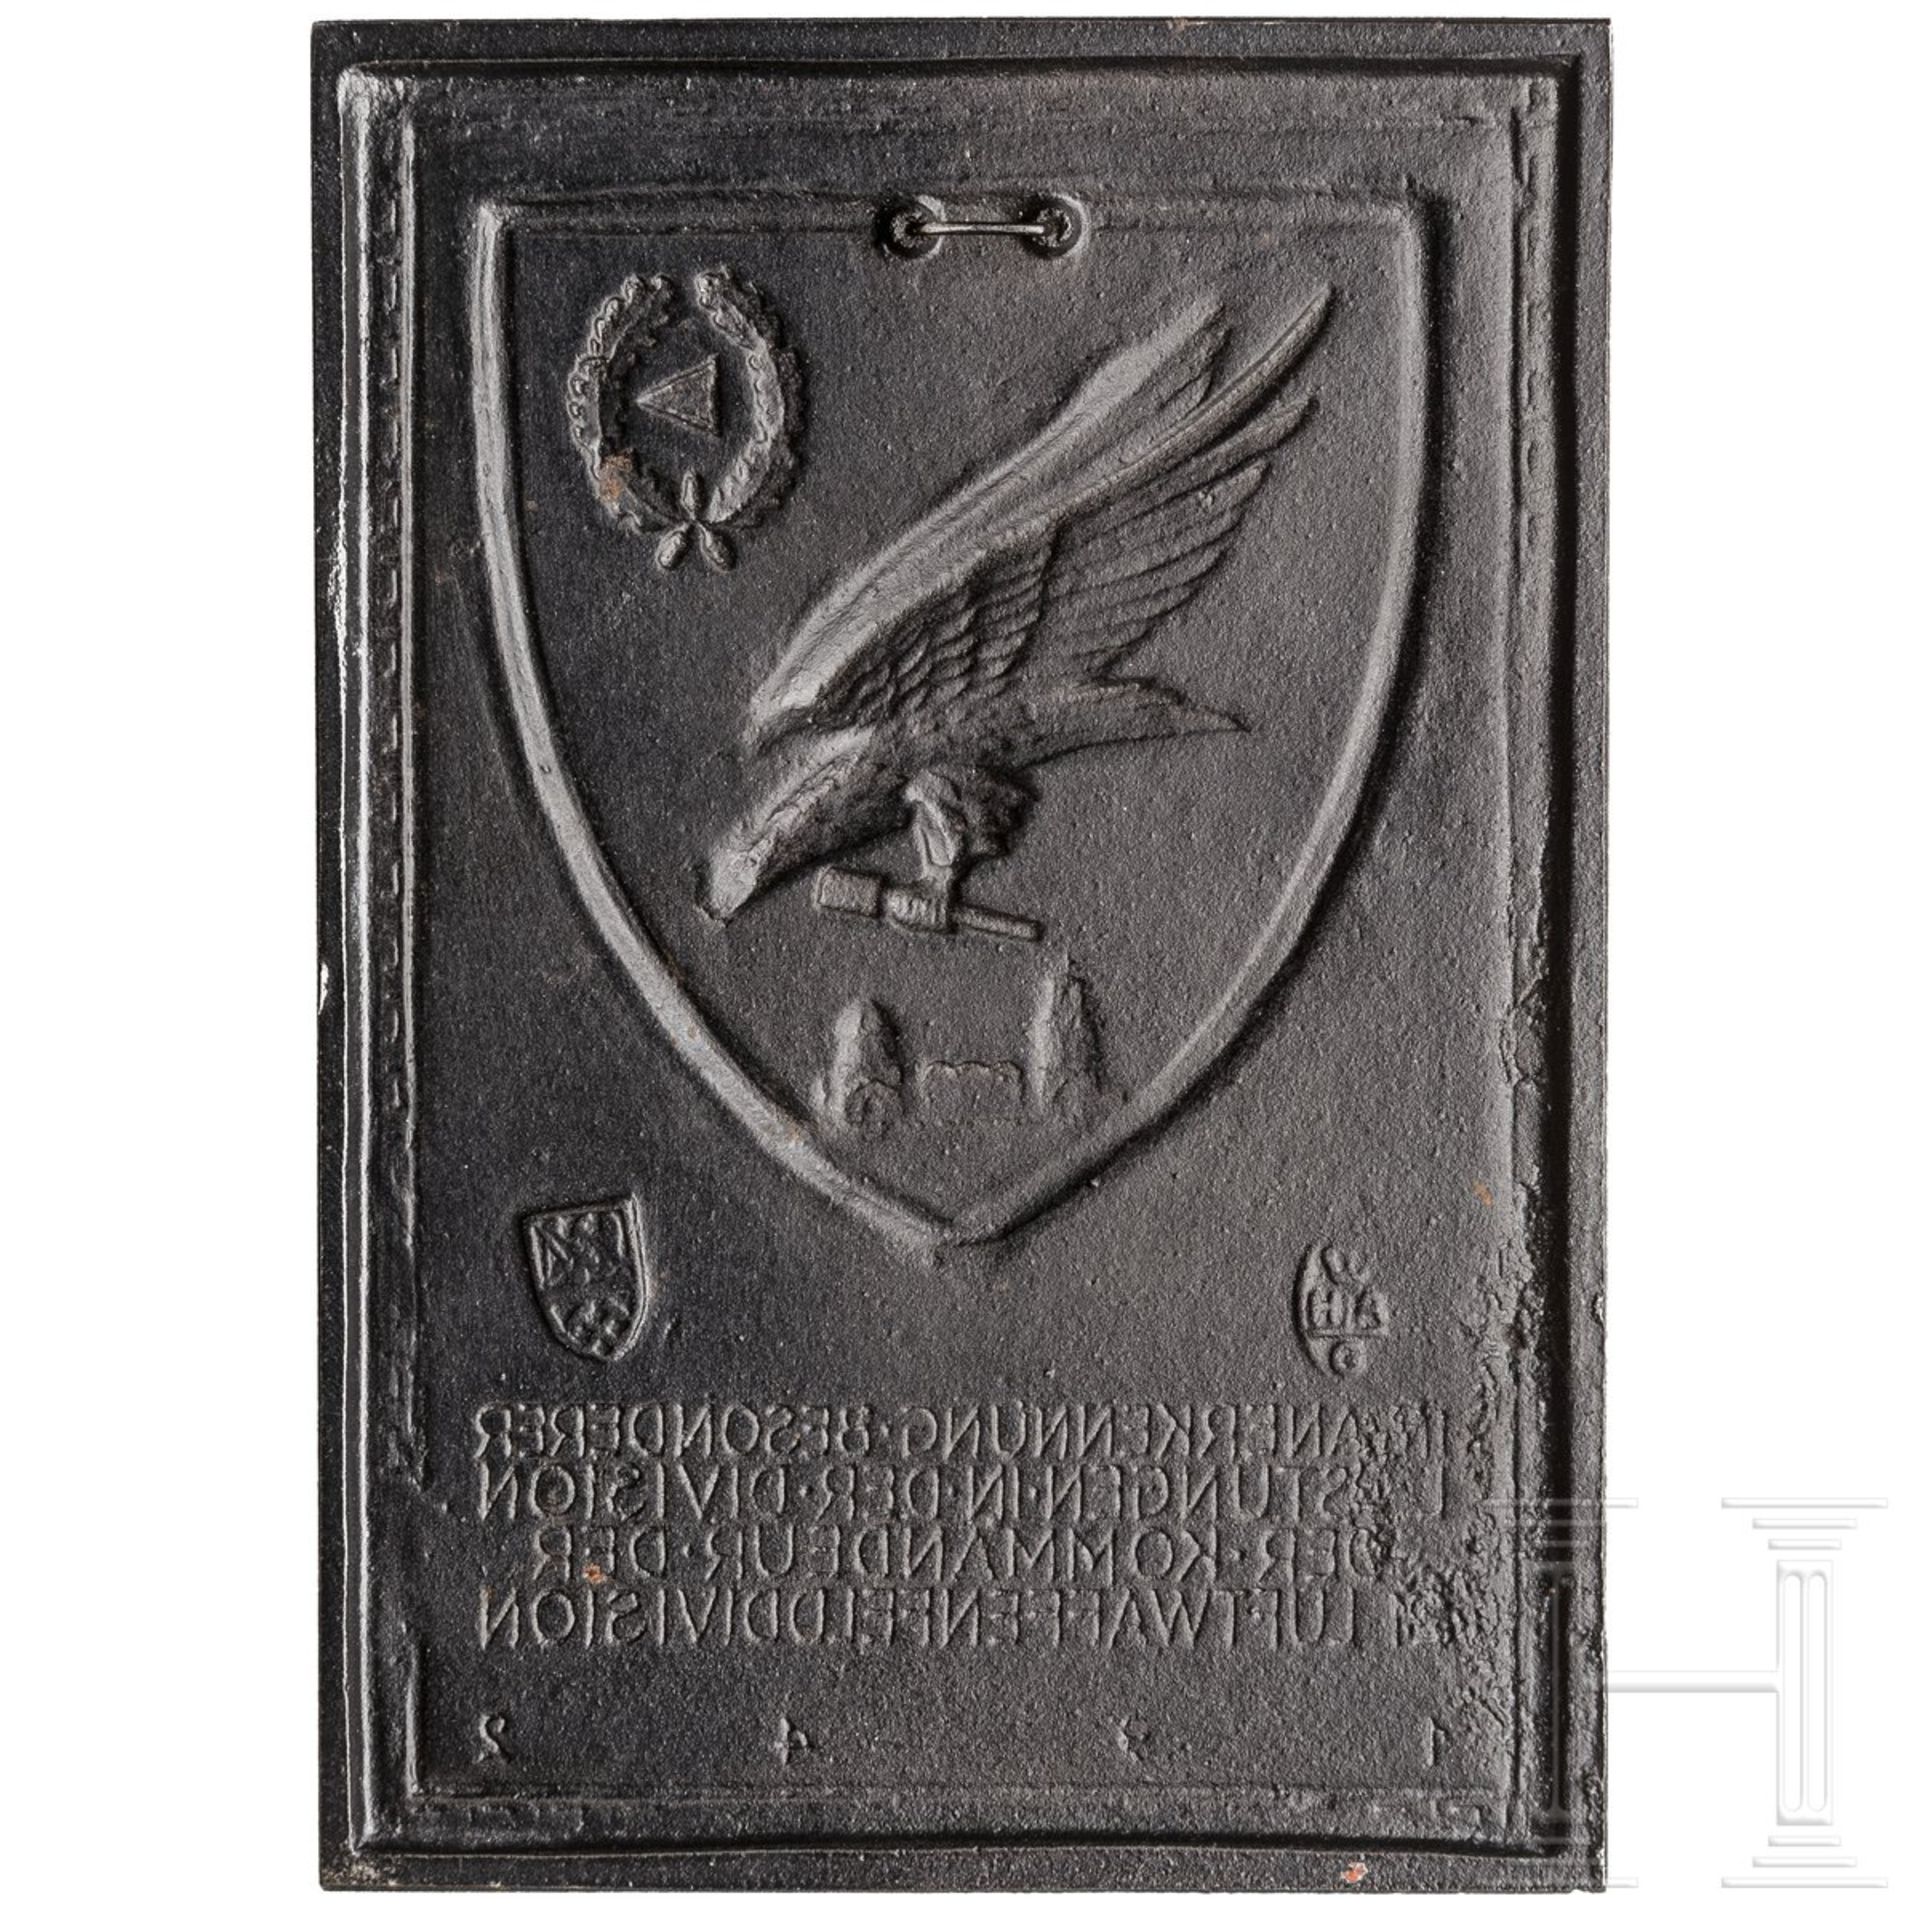 Ehrenplakette der 21. Luftwaffen-Felddivision 1942 - Bild 2 aus 2